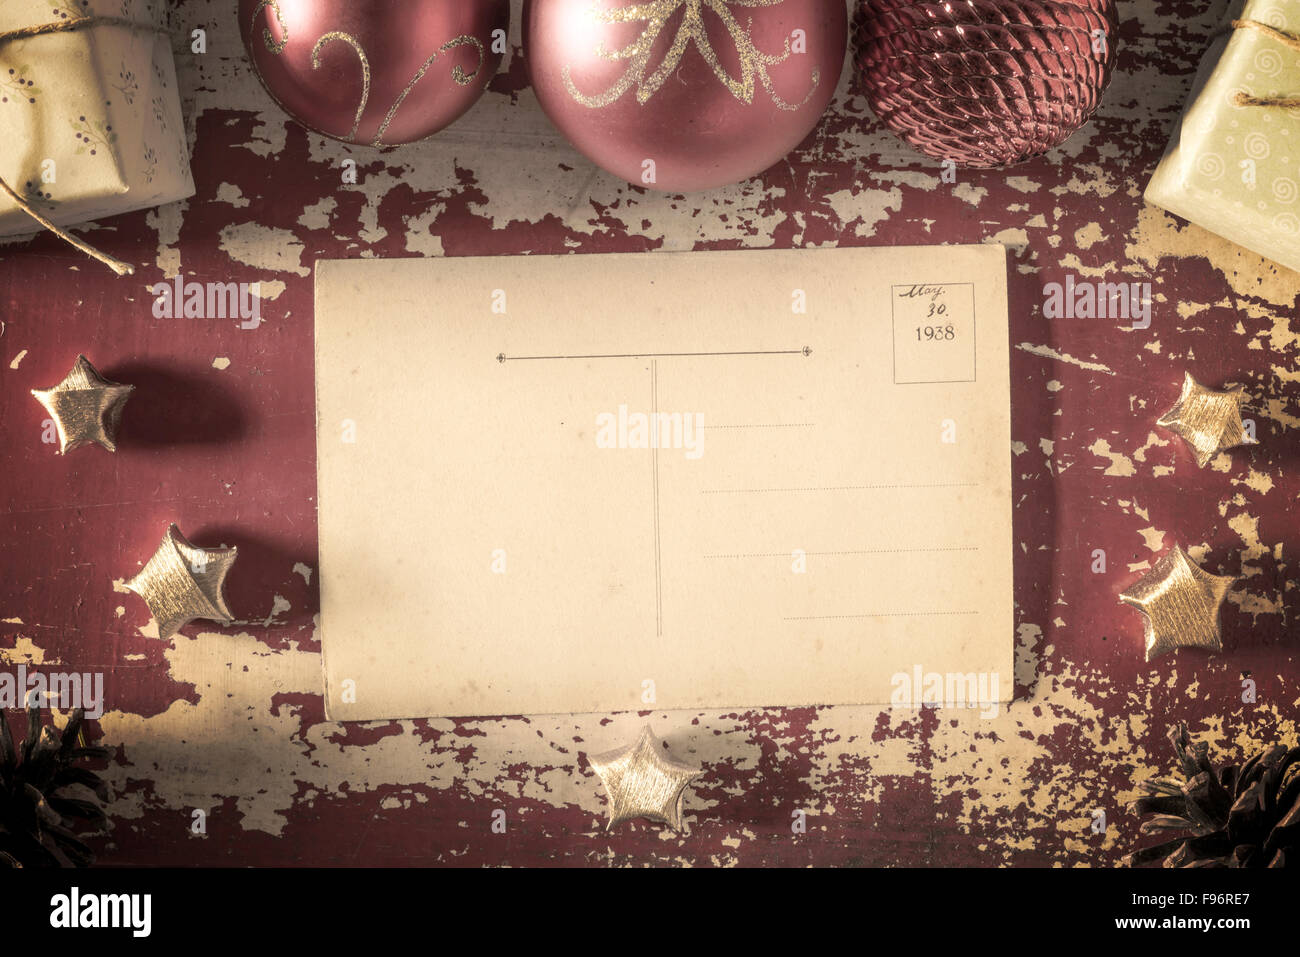 Joyeux noël retro haut Afficher carte de vœux vide retour sur grunge background texture bois avec éléments de filtre, vintage Banque D'Images